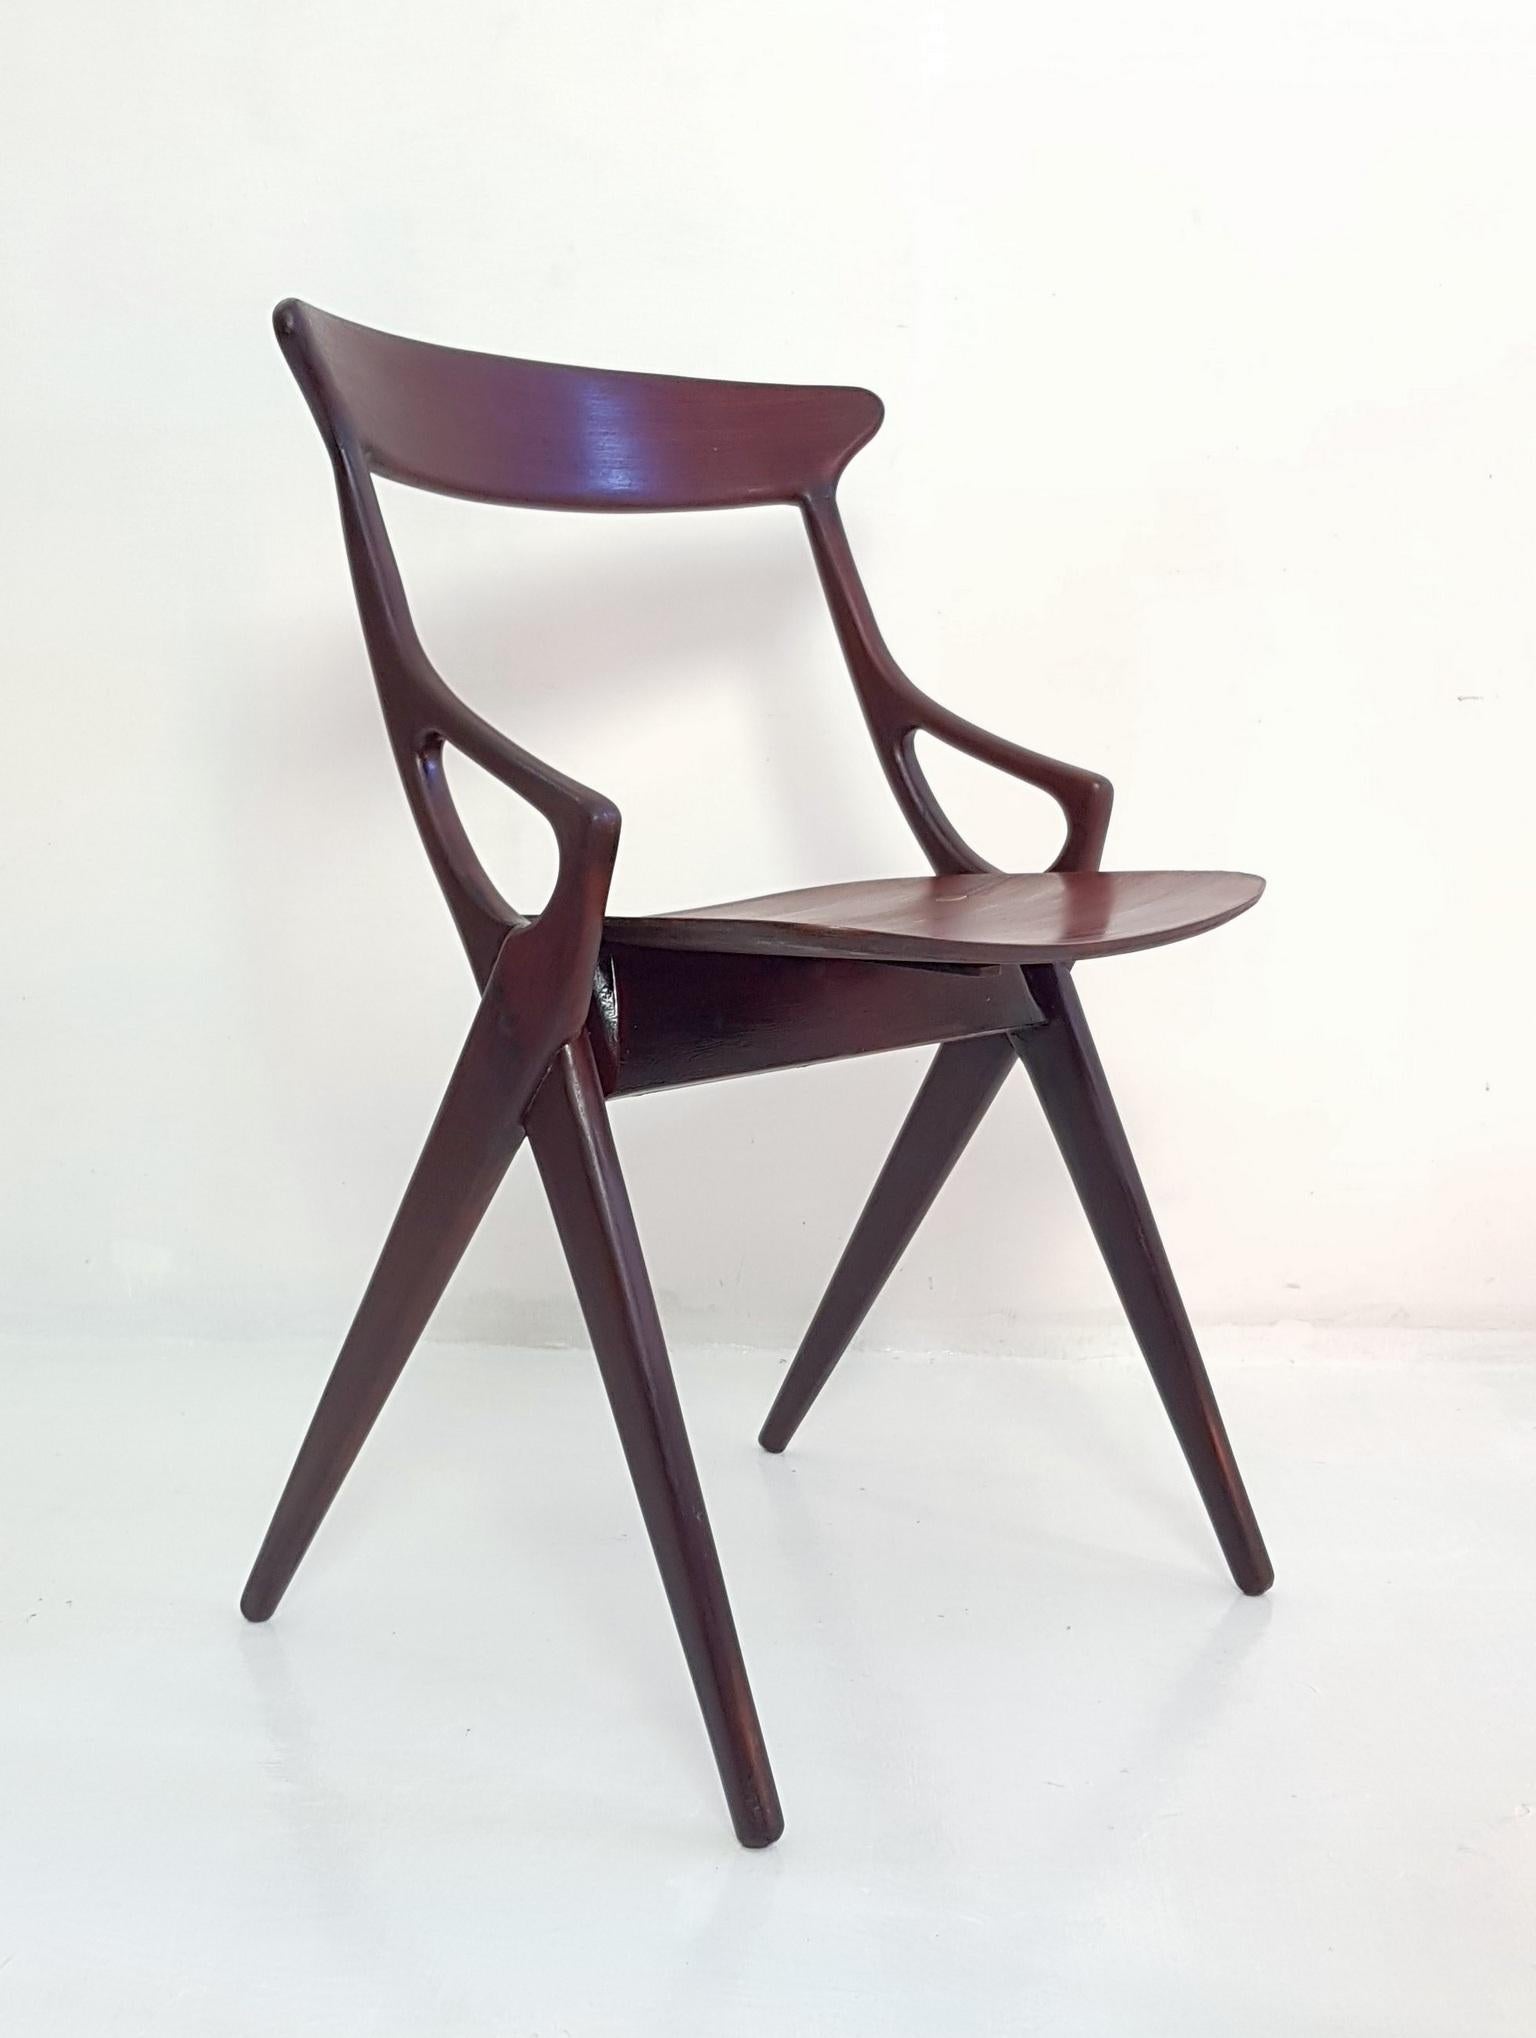 Walnut Set of 4 Dining Chairs by Arne Hovmand Olsen for Mogens Kold, Denmark, 1959 For Sale